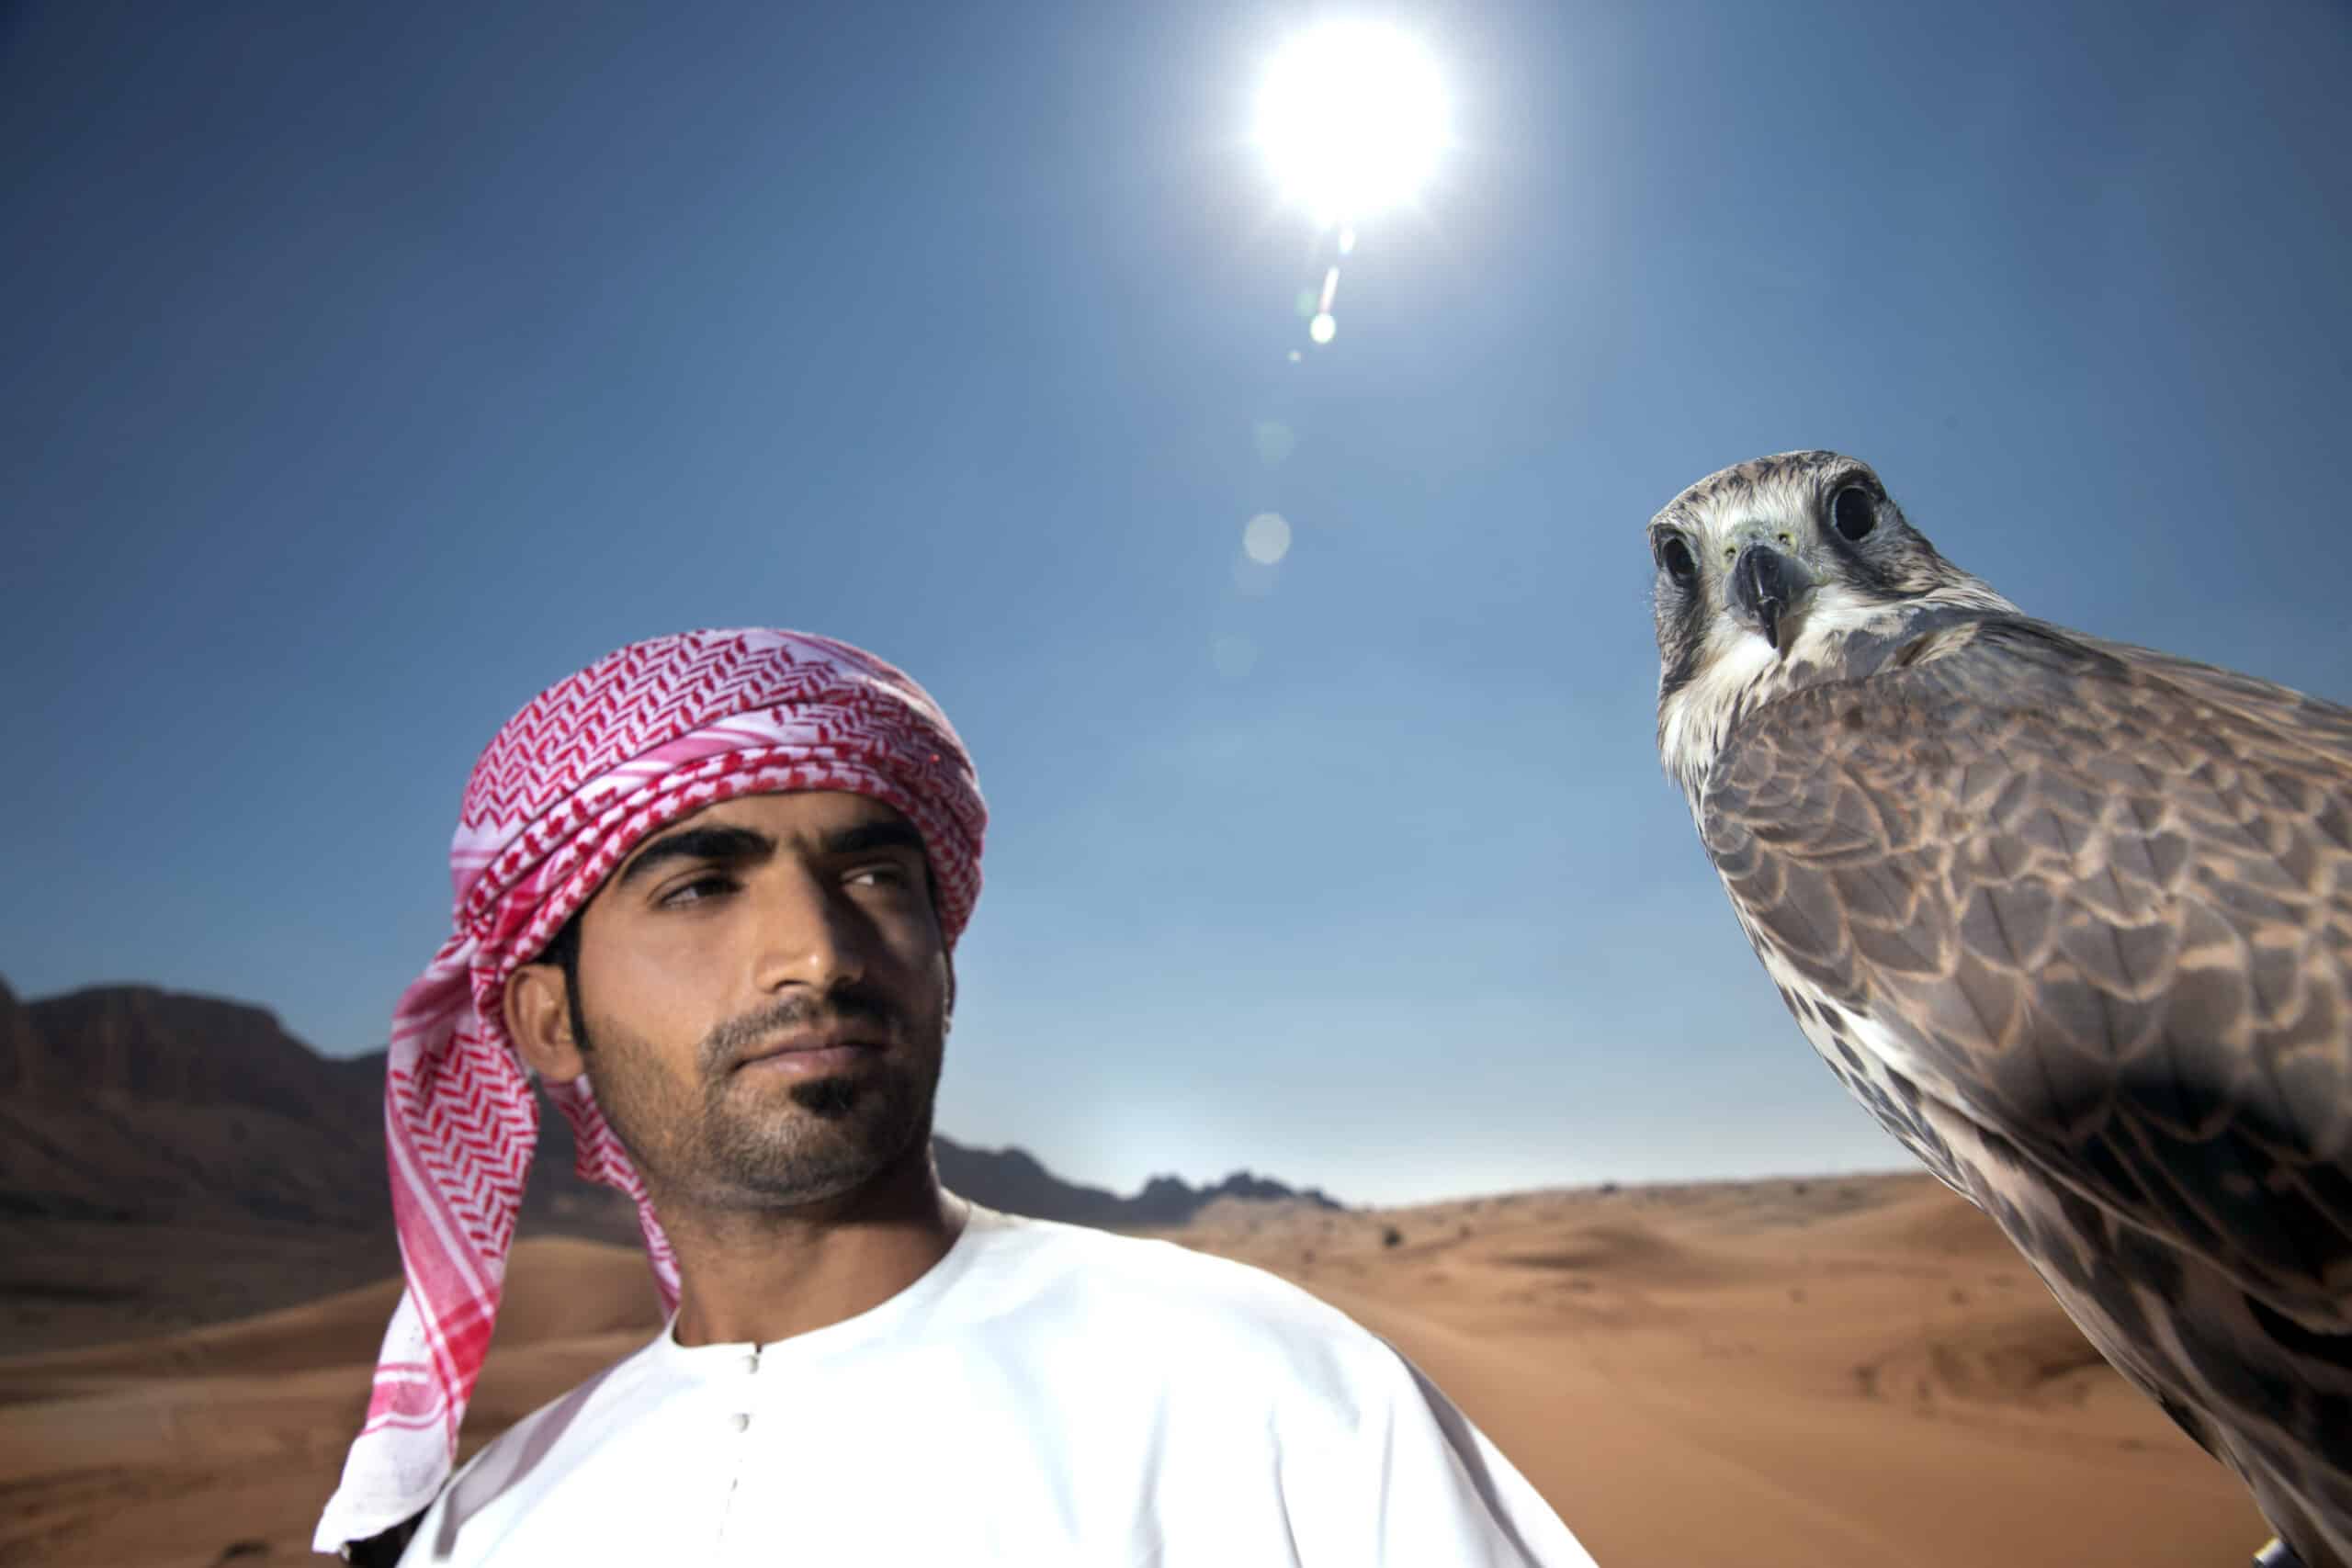 Ein Mann in traditioneller emiratischer Kleidung steht in einer Wüste, blickt in die Ferne und hat einen Falken auf der Hand, während die Sonne hell strahlt. © Fotografie Tomas Rodriguez